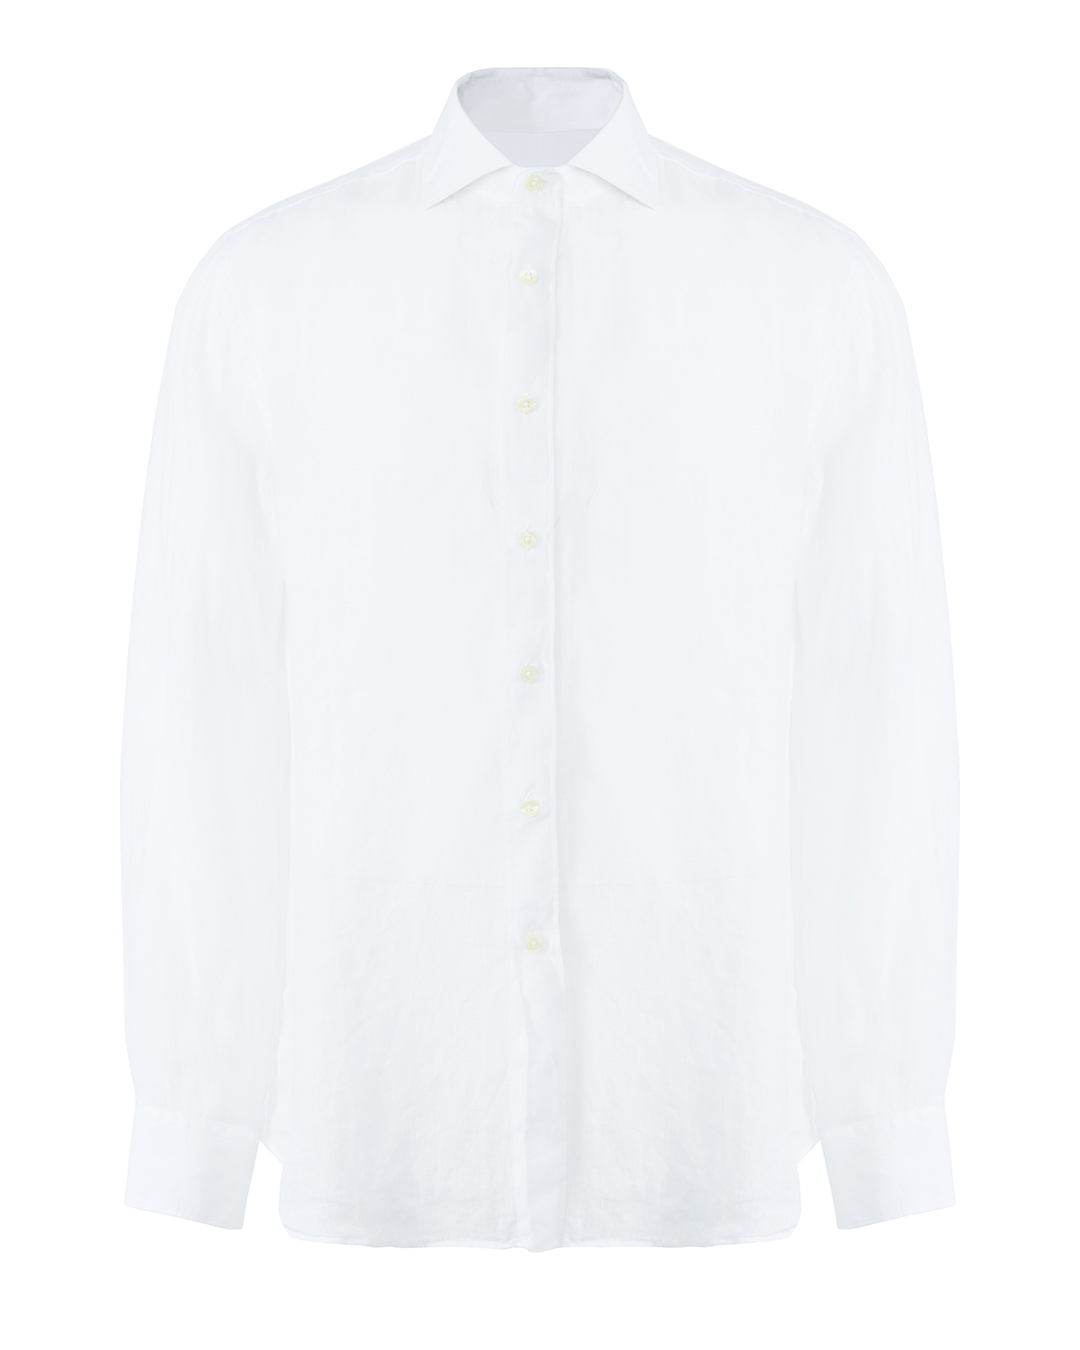 рубашка 120% lino V0M1311-0-00 белый xl, размер xl